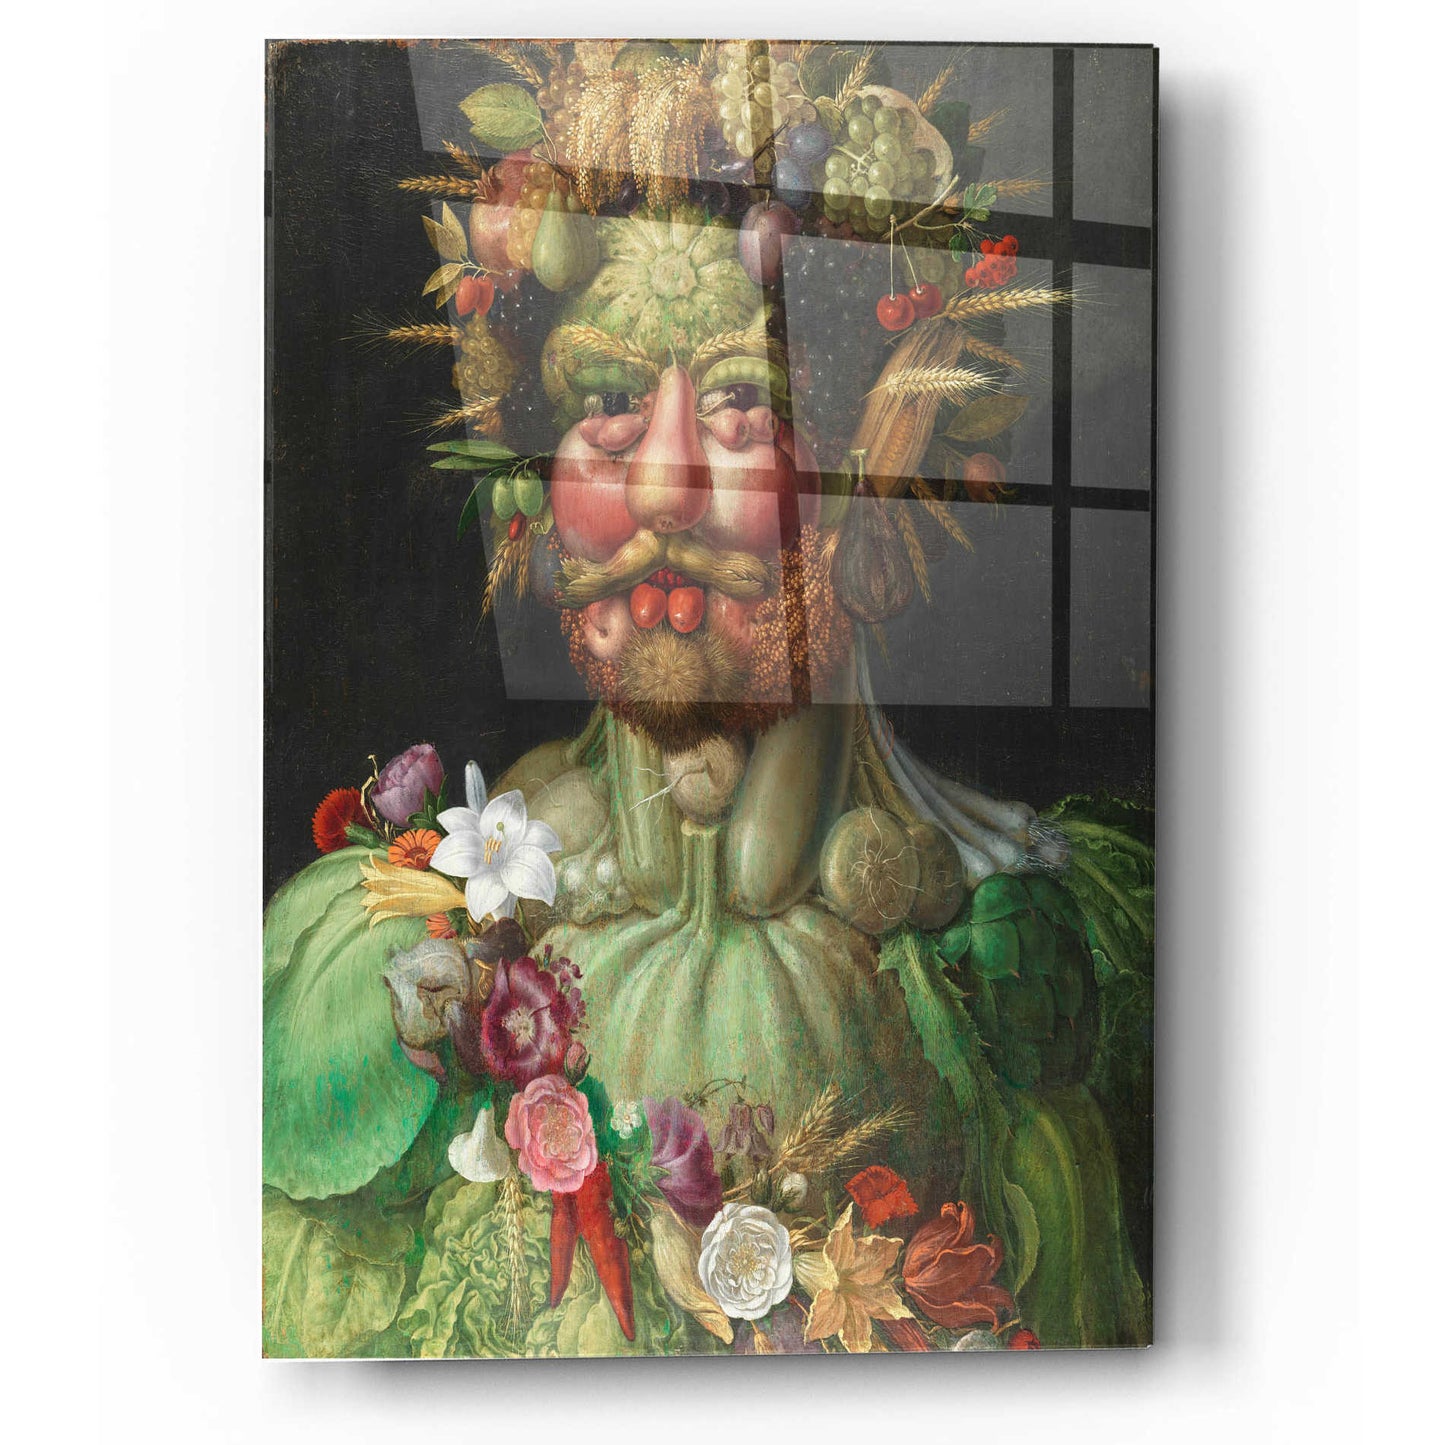 Epic Art 'Vertumnus' by Guiseppe Arcimboldo, Acrylic Glass Wall Art,12x16